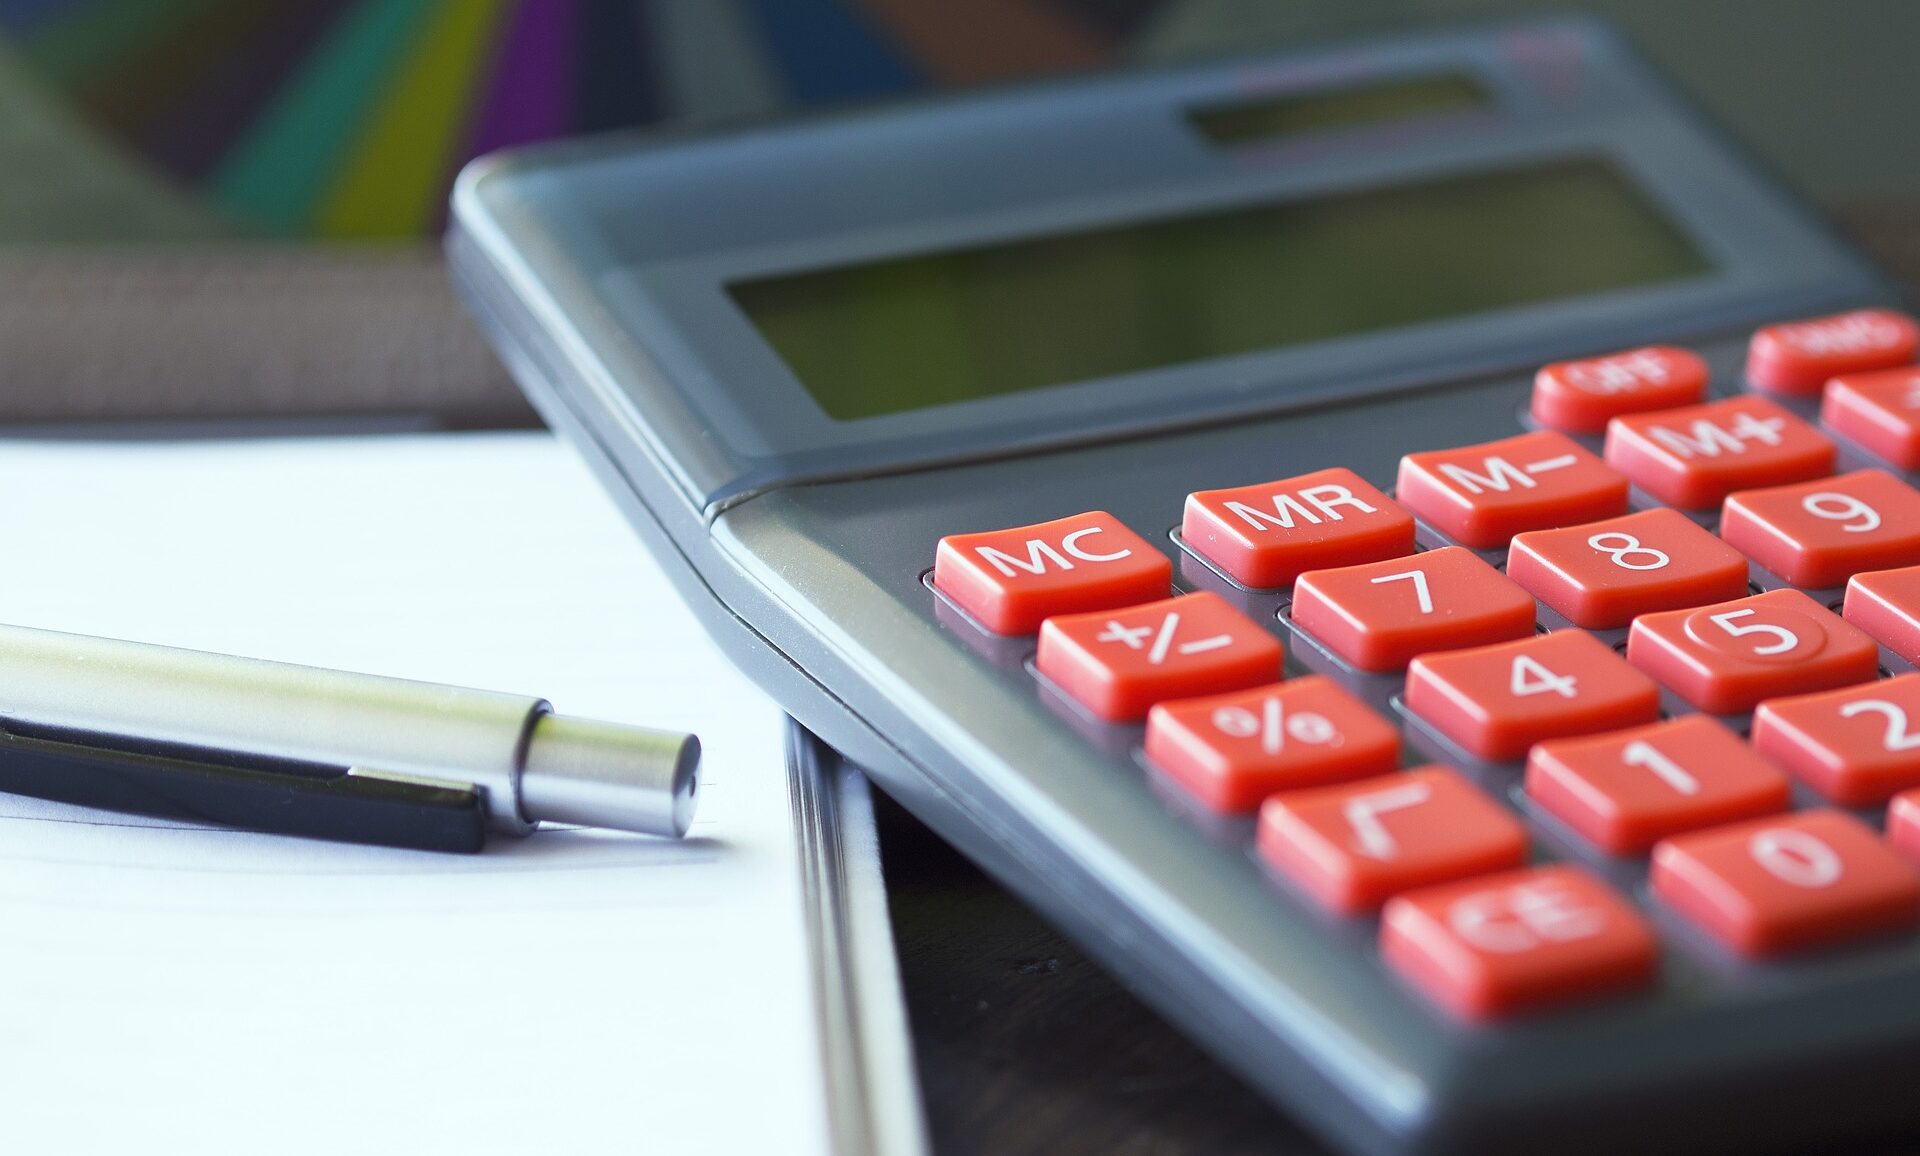 AFPSLAI Loan Calculator